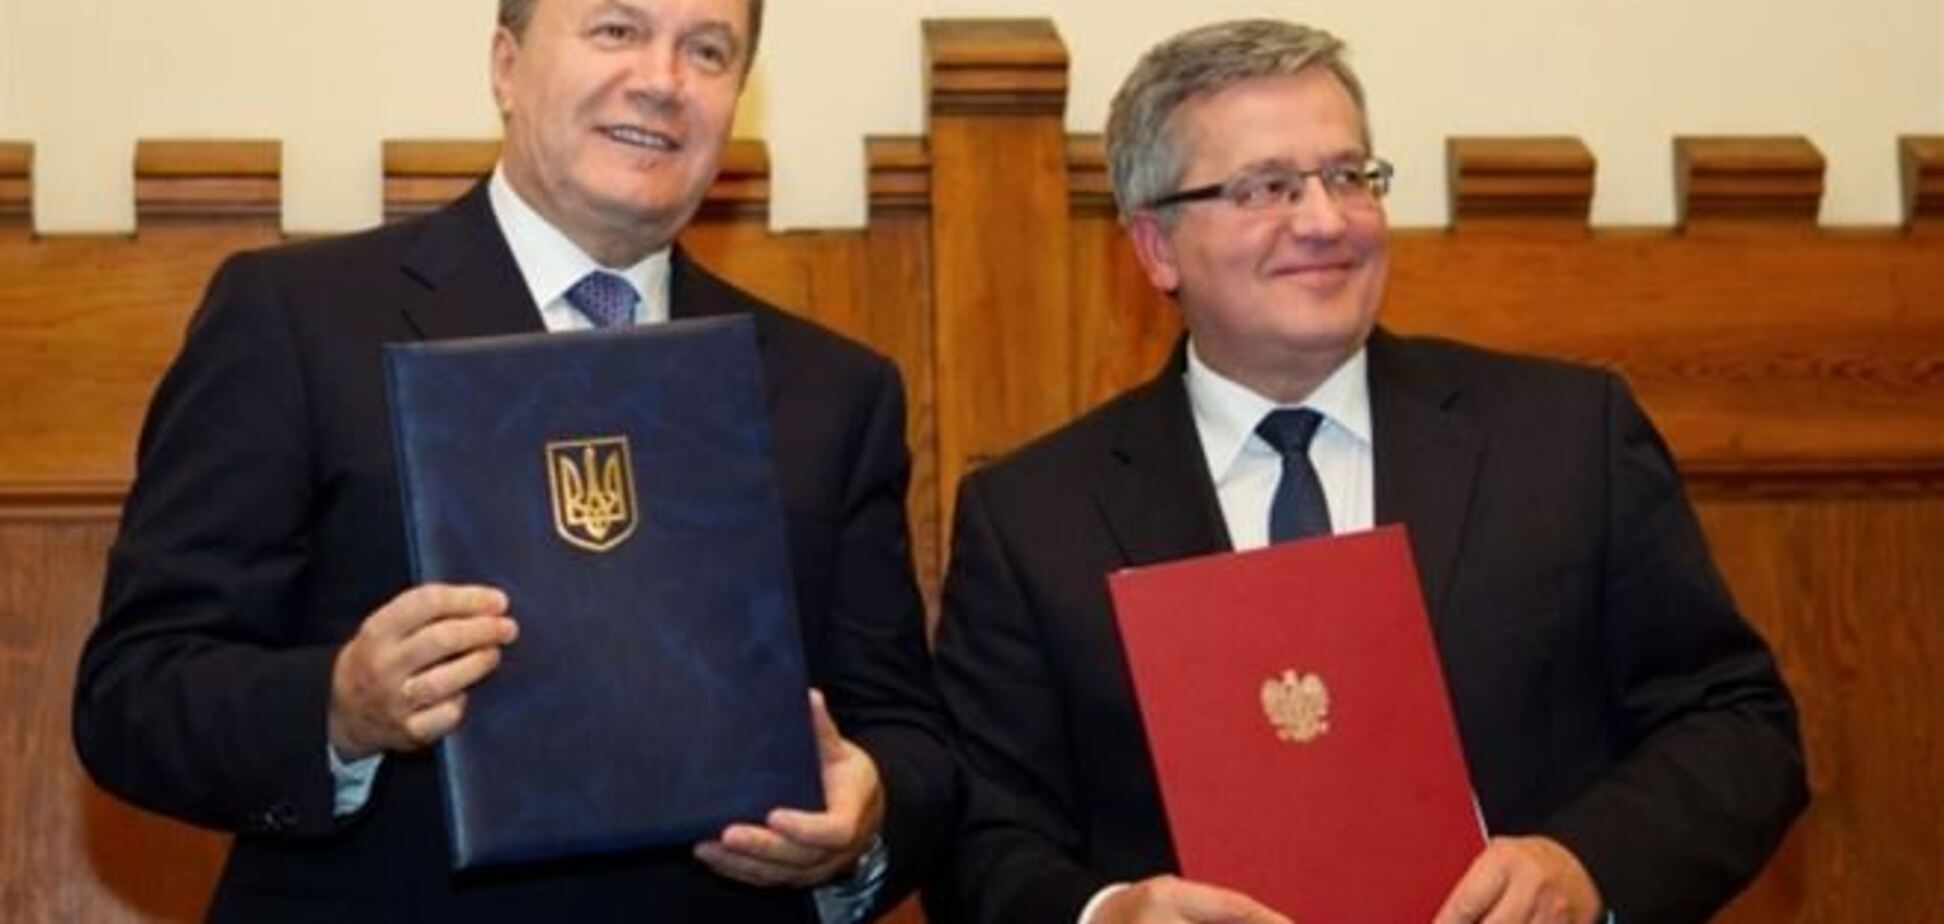 Робочий візит Віктора Януковича до Республіки Польща